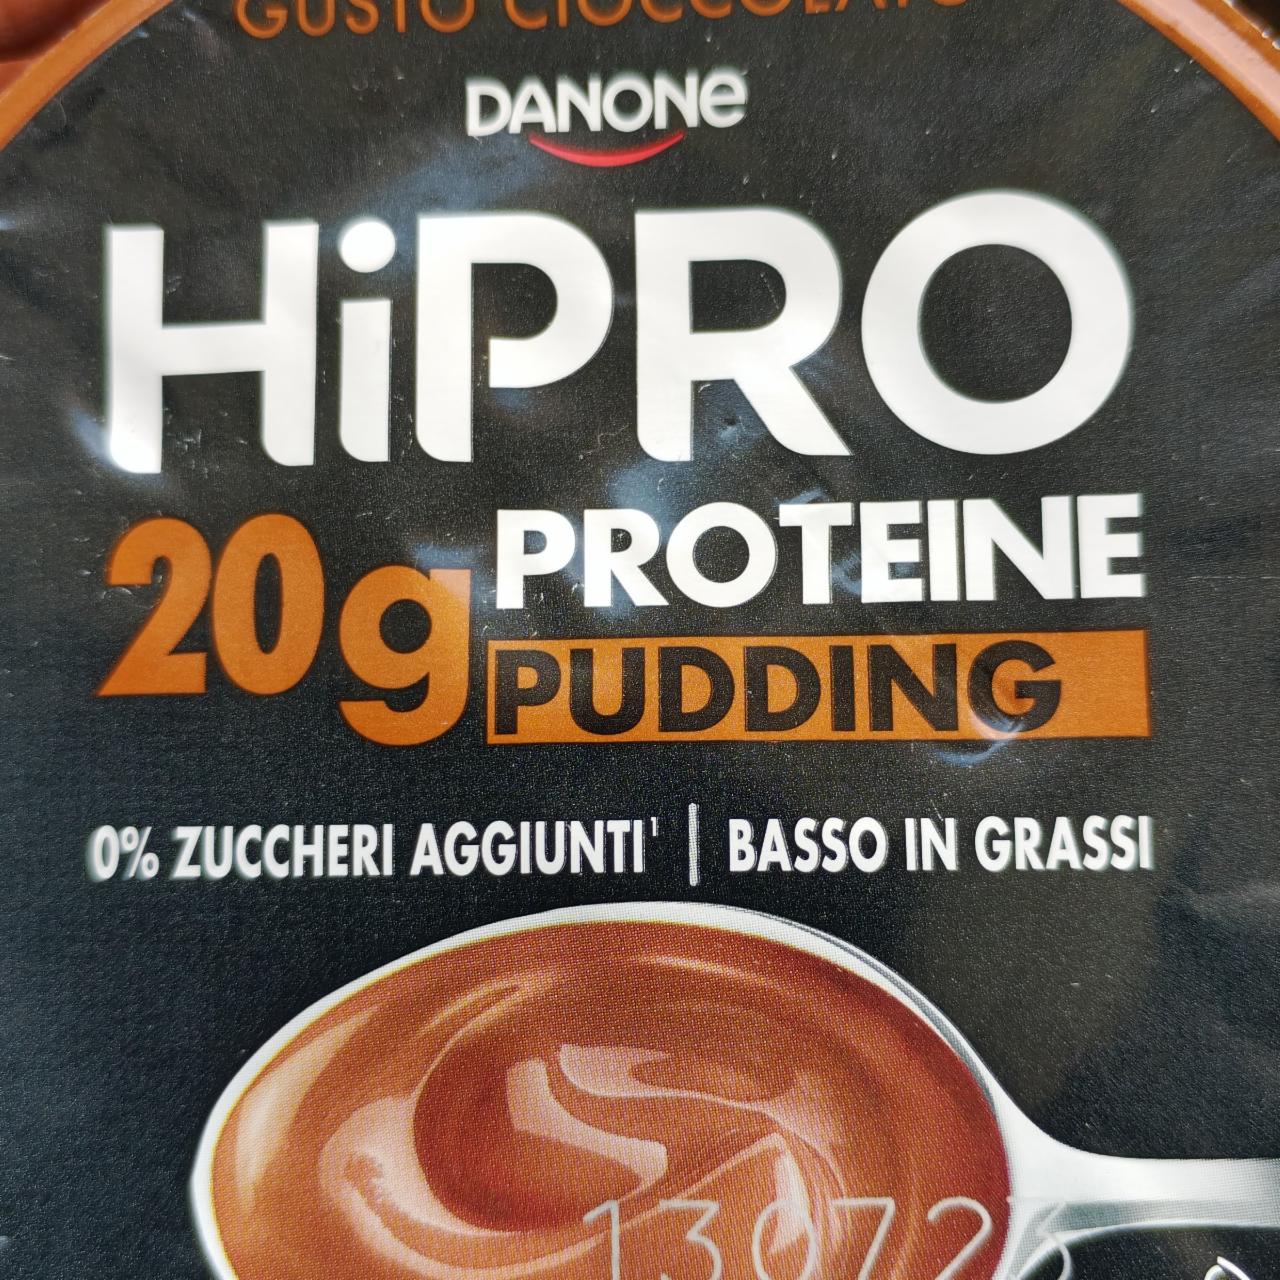 Fotografie - HiPro 20g Proteine Pudding Gusto Cioccolato Danone